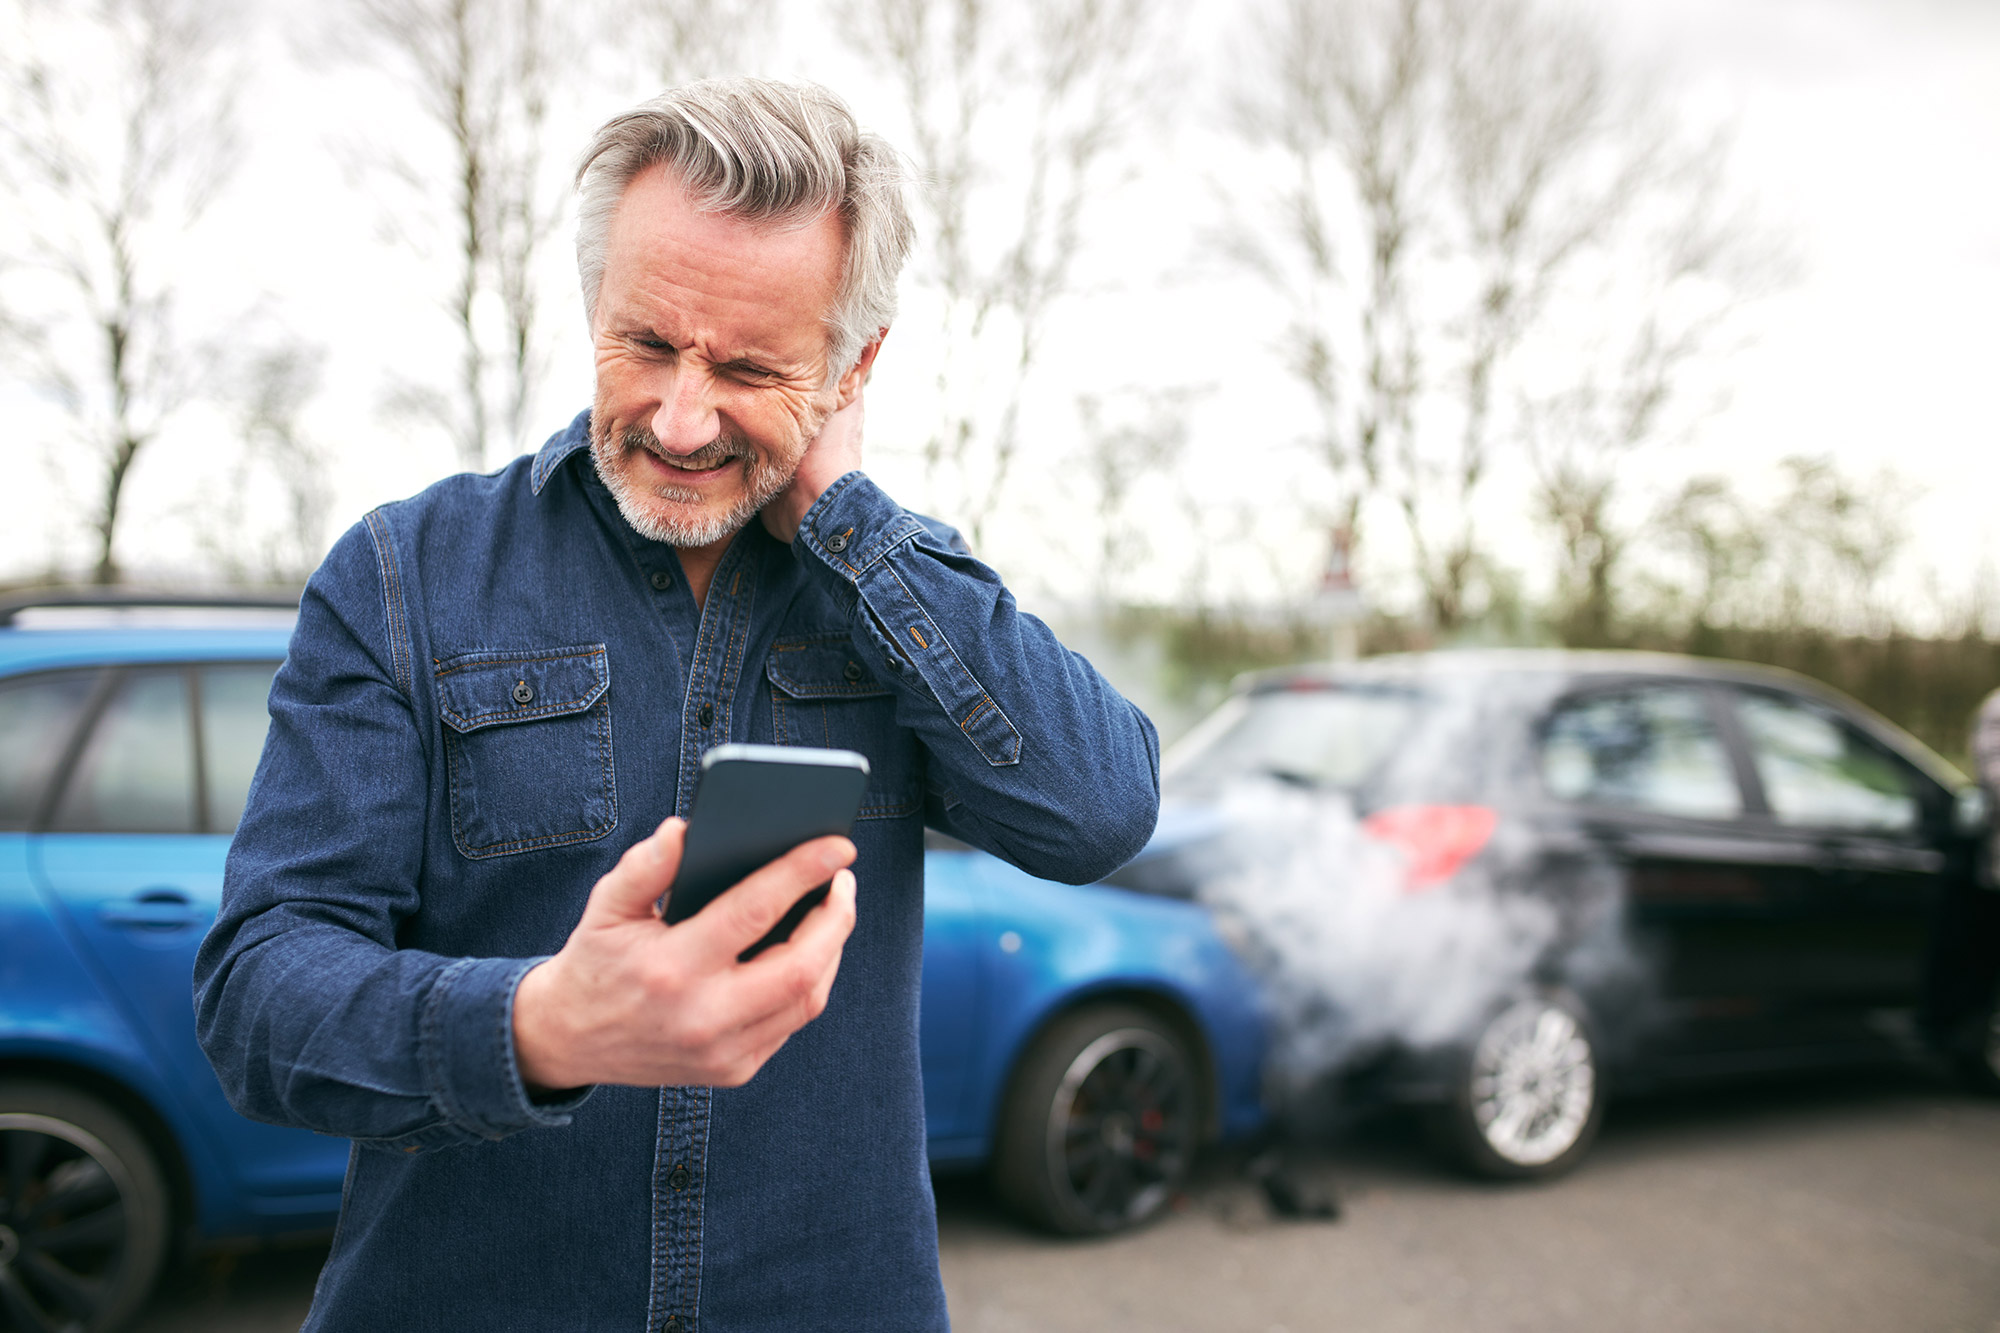 Diese Aufnahme zeigt einen Mann der, vor einem Unfall im Hintergrund, mit seinem Smartphone nach dem Hilfe Kontakt sucht.